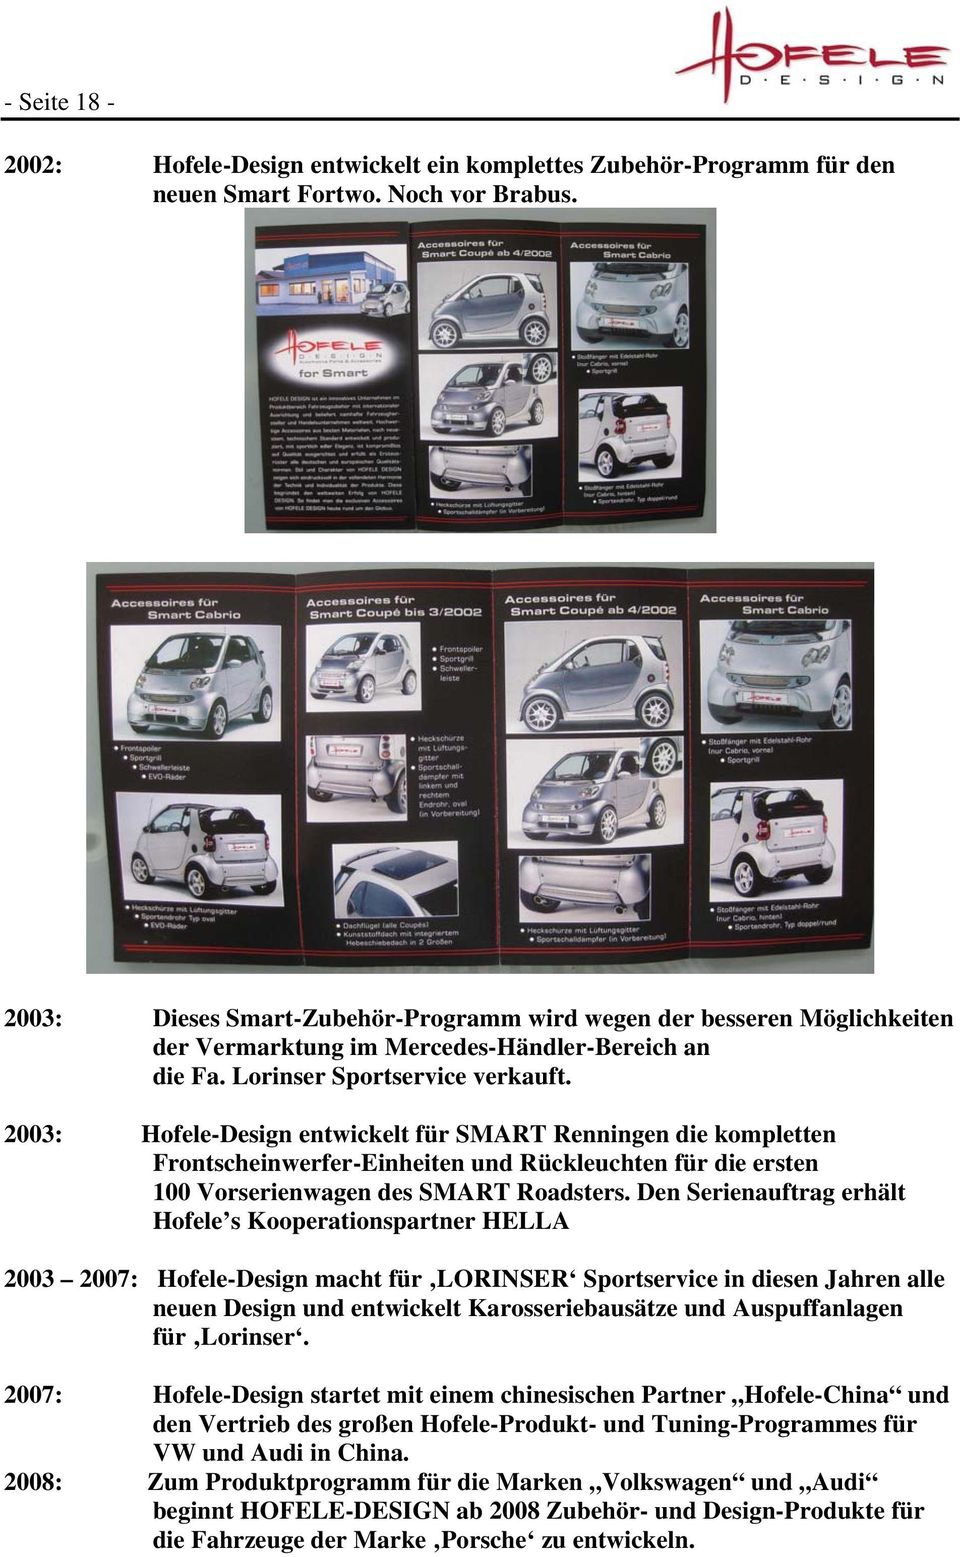 2003: Hofele-Design entwickelt für SMART Renningen die kompletten Frontscheinwerfer-Einheiten und Rückleuchten für die ersten 100 Vorserienwagen des SMART Roadsters.